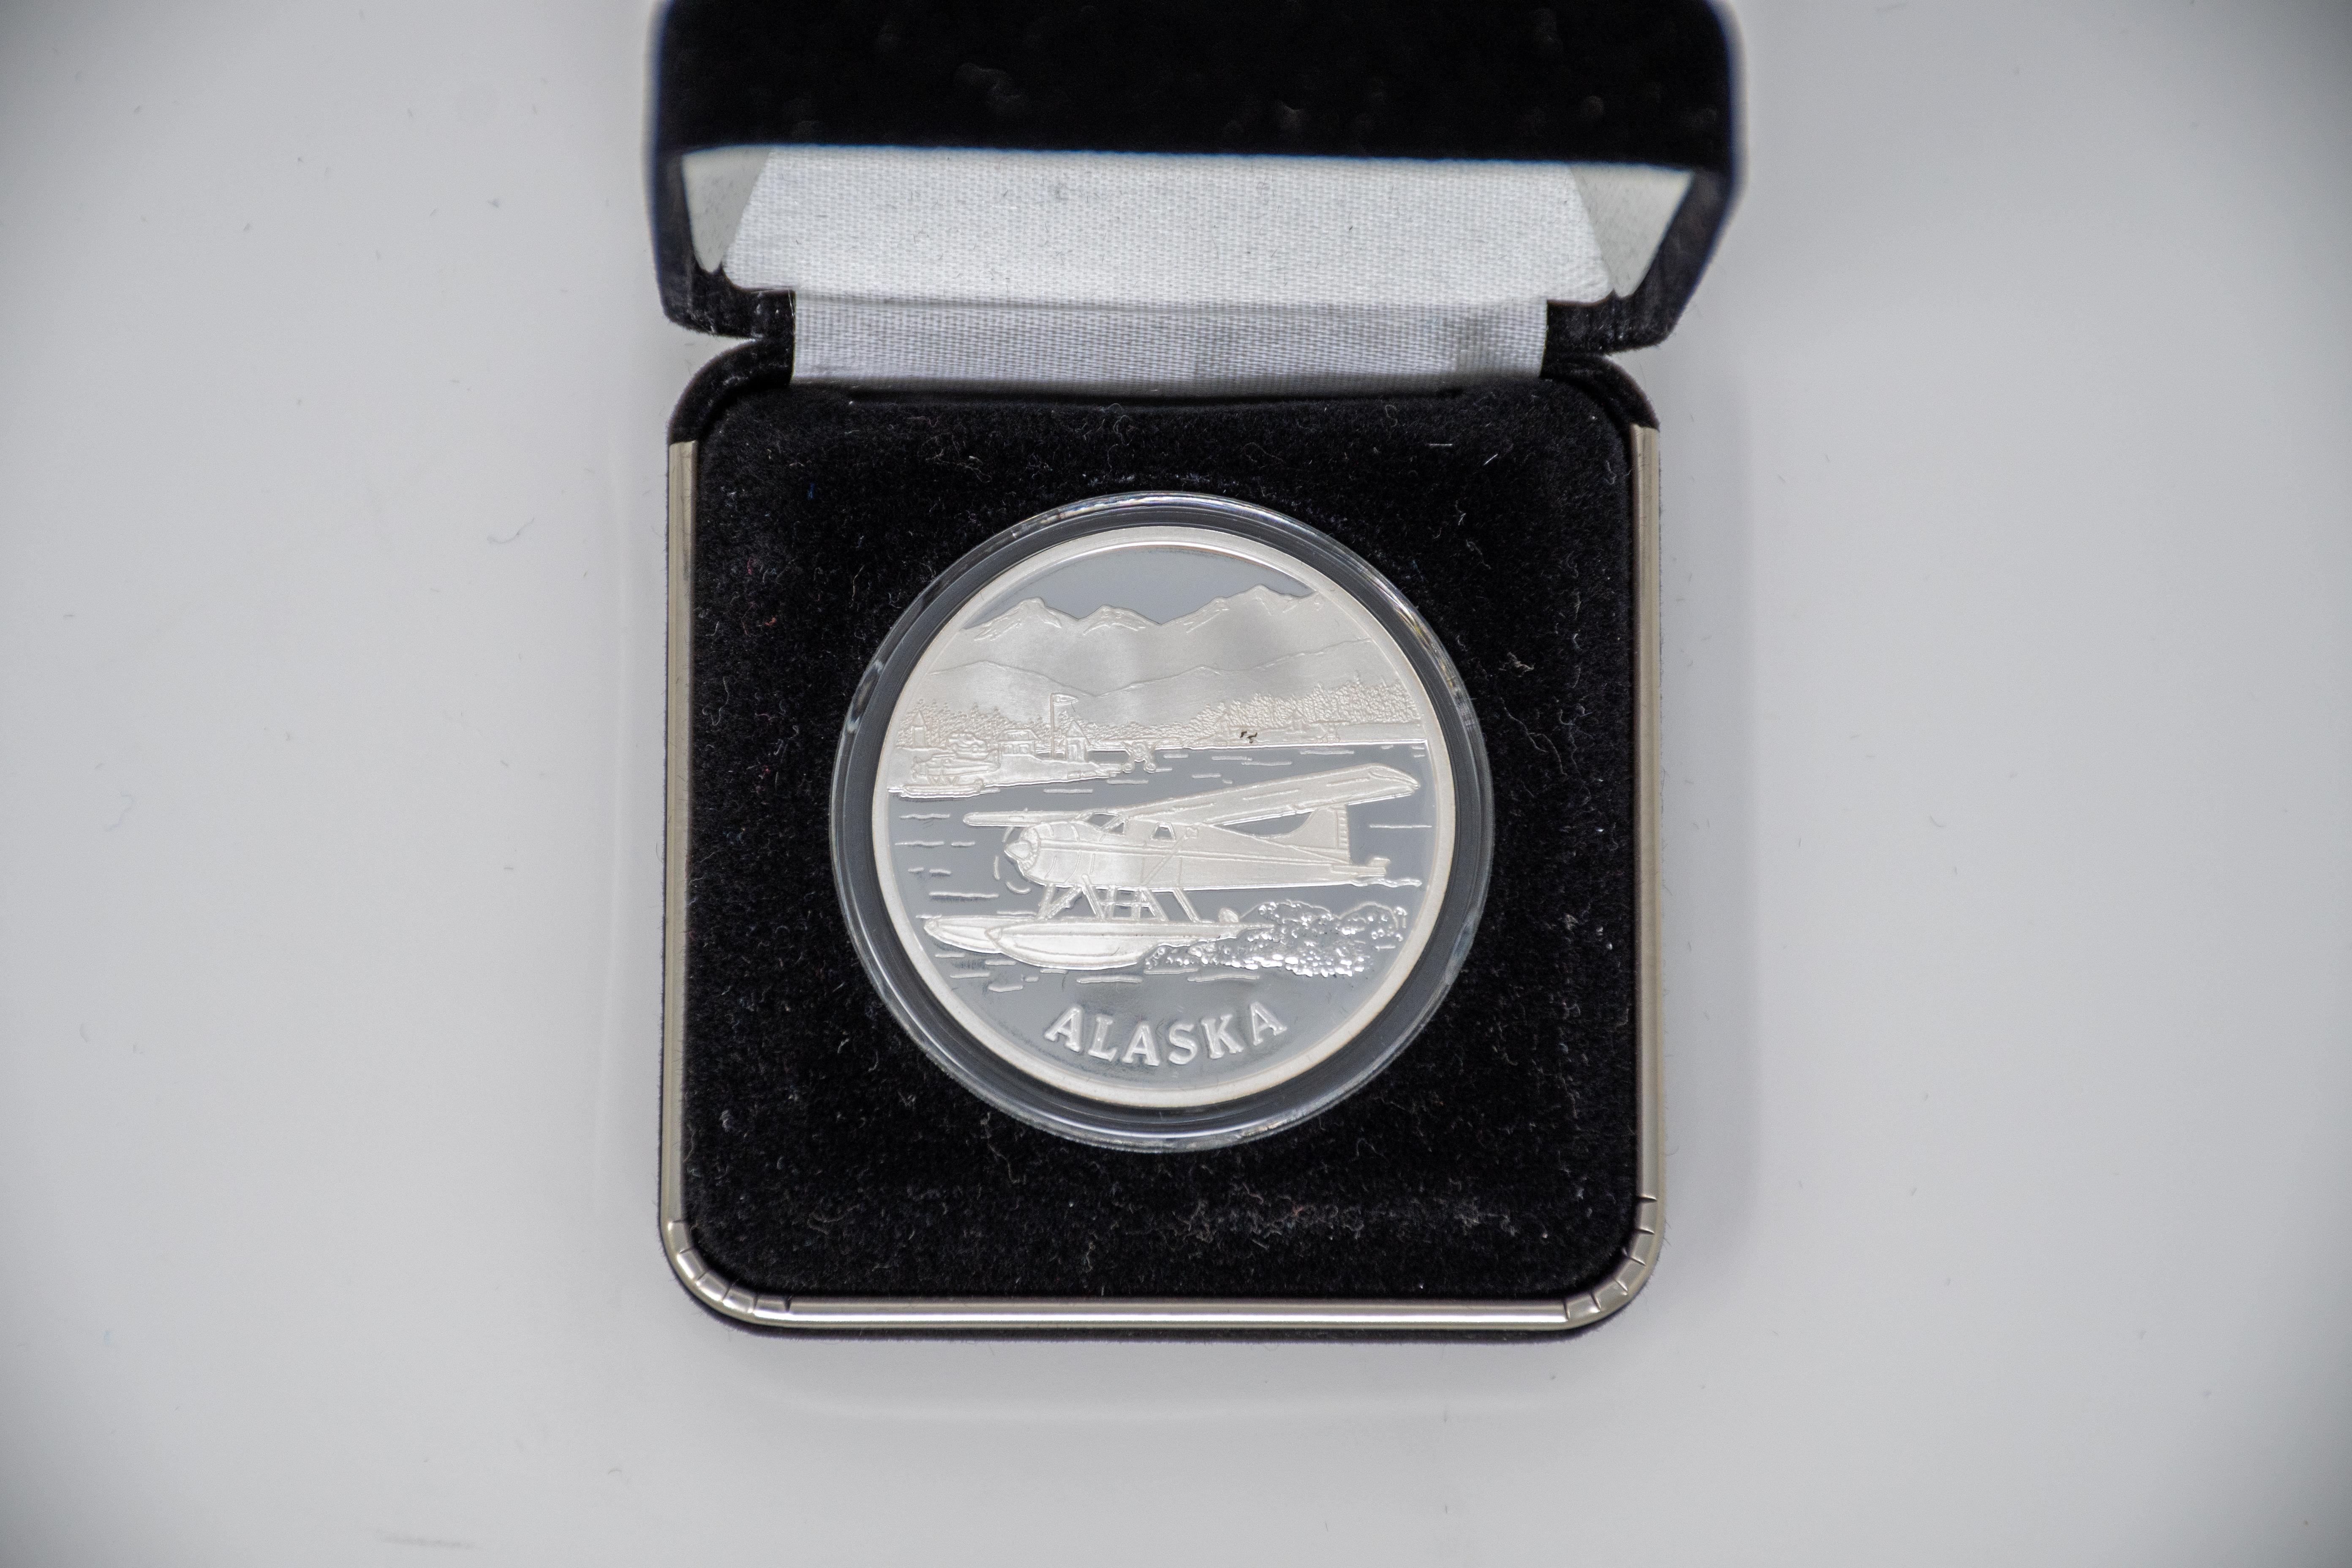  Beaver Airplane Coin